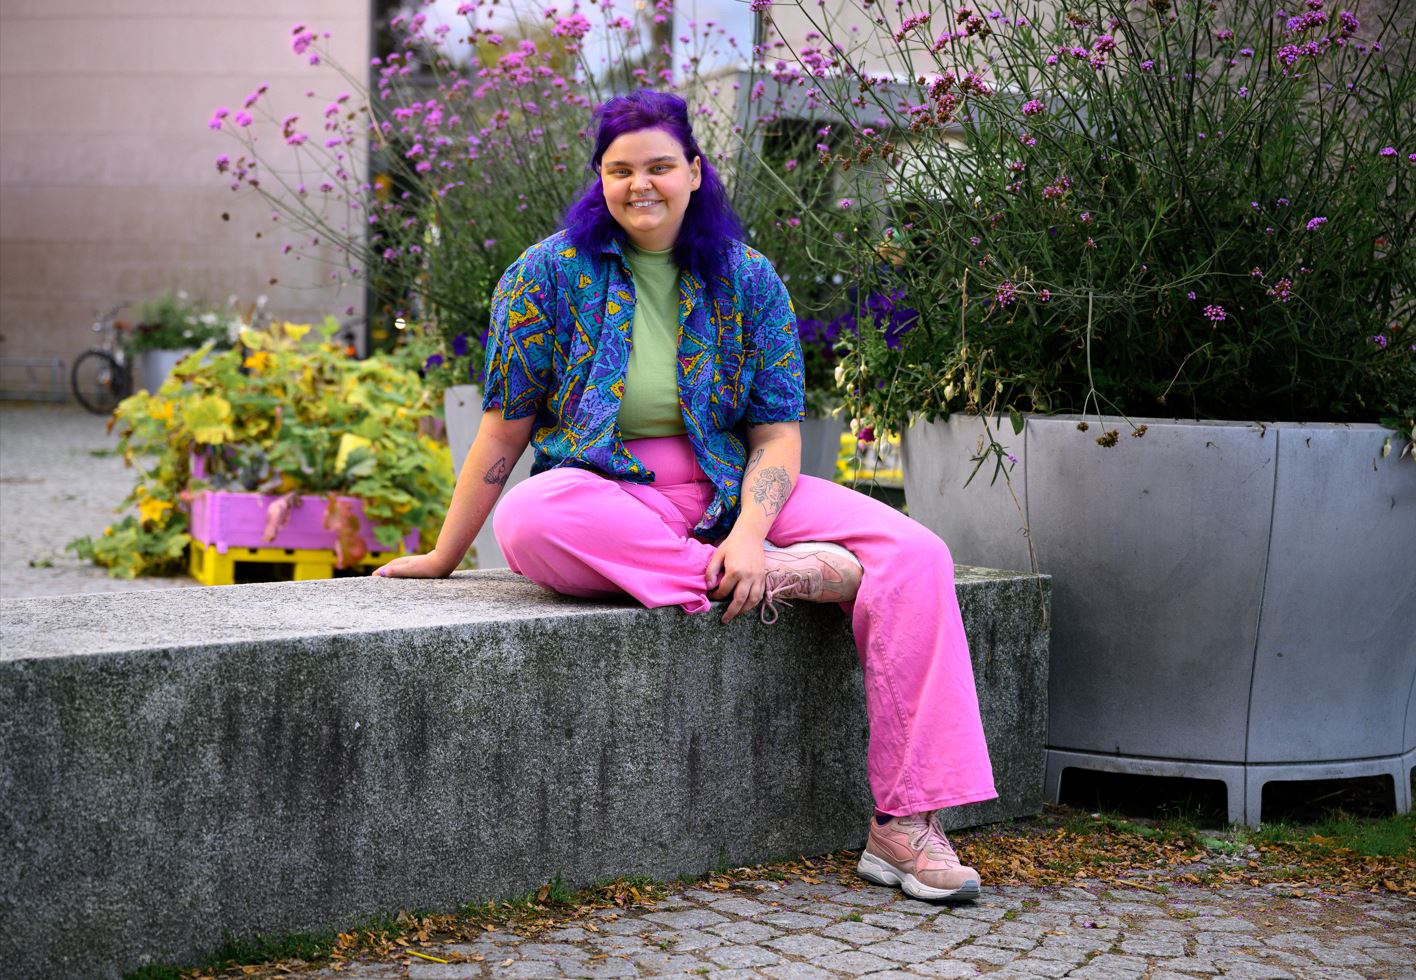 Leende person med lila hår, mönstrad färgglad skjorta, grön t-shirt, rosa byxor och skor, sitter på en stenbänk utomhus, med stora krukor med lila blommor i bakgrunden.